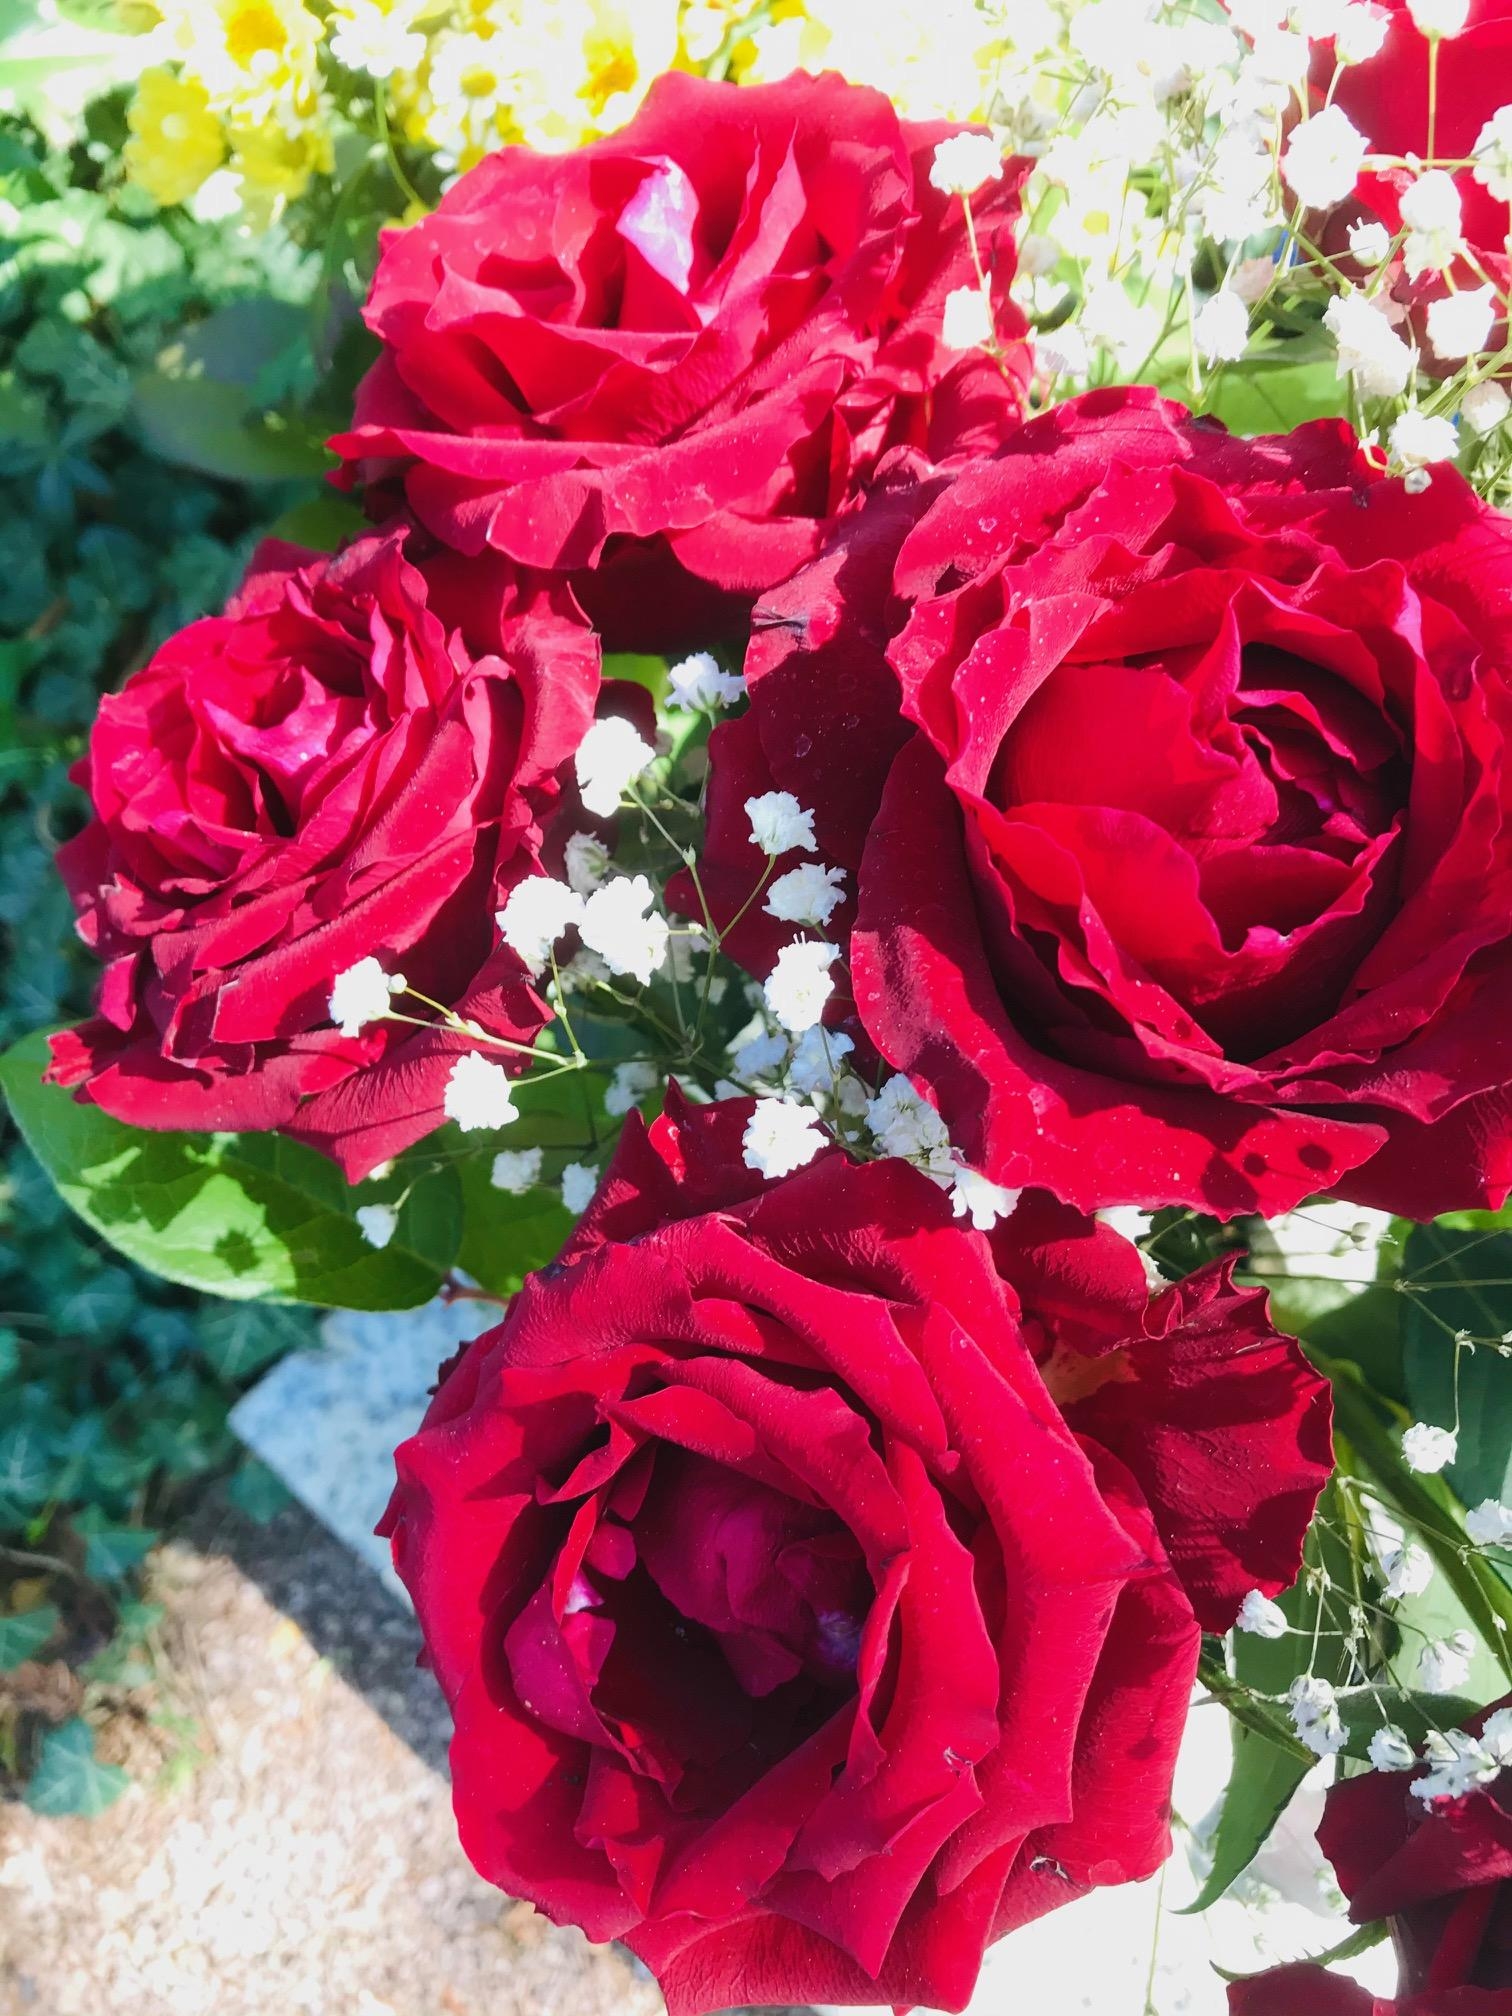 Was wäre die Welt nur ohne Rosen.....
#blumenliebe